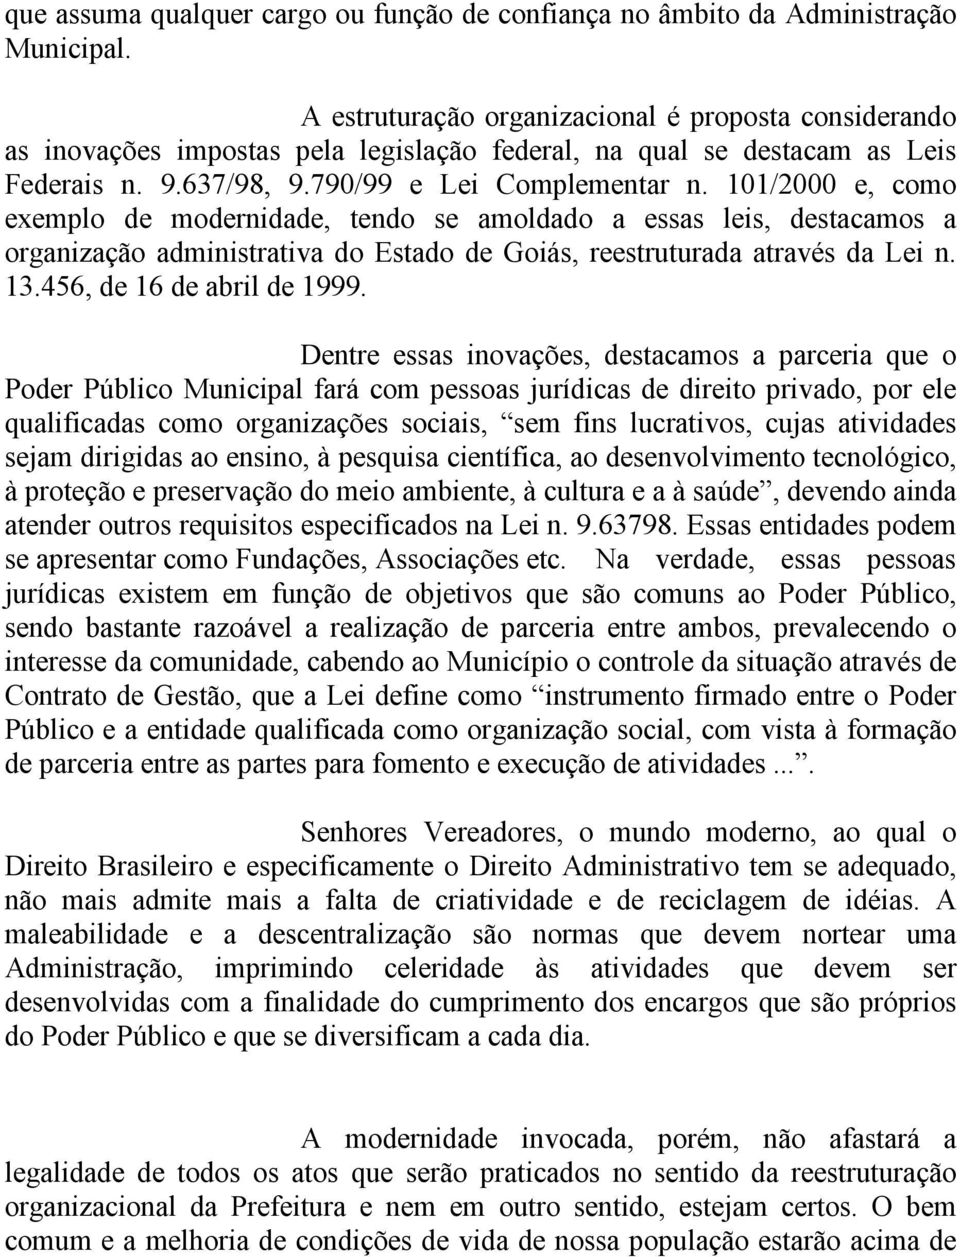 101/2000 e, como exemplo de modernidade, tendo se amoldado a essas leis, destacamos a organização administrativa do Estado de Goiás, reestruturada através da Lei n. 13.456, de 16 de abril de 1999.